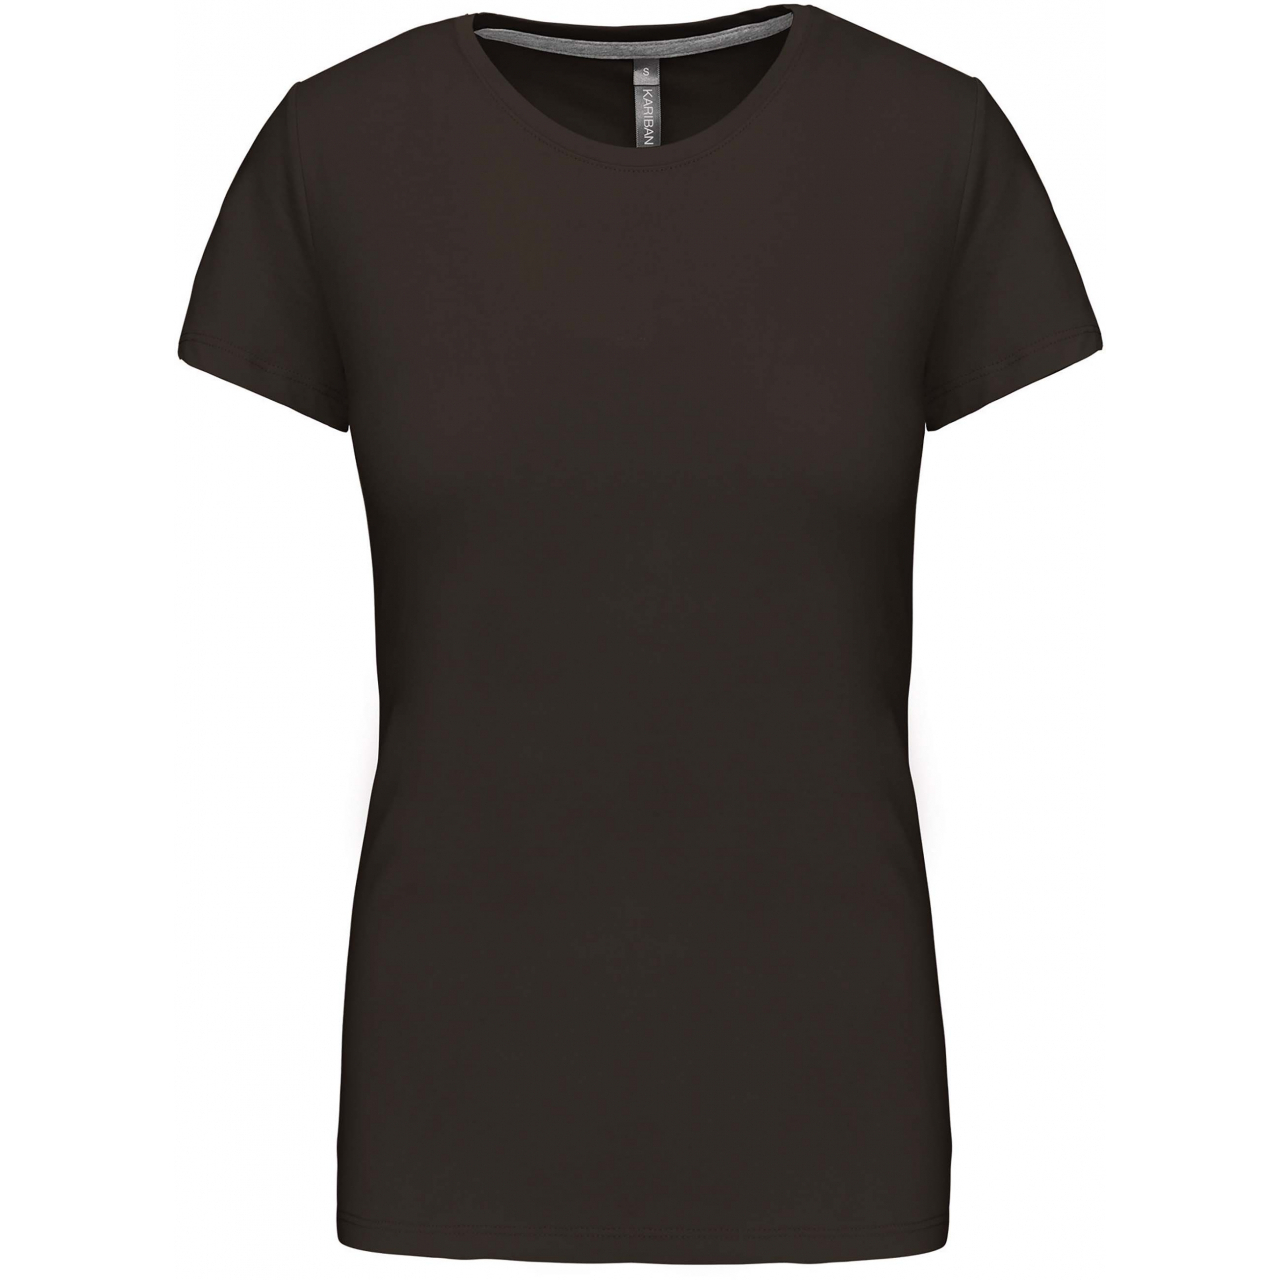 Dámské tričko Kariban s krátkým rukávem - tmavé khaki, 3XL